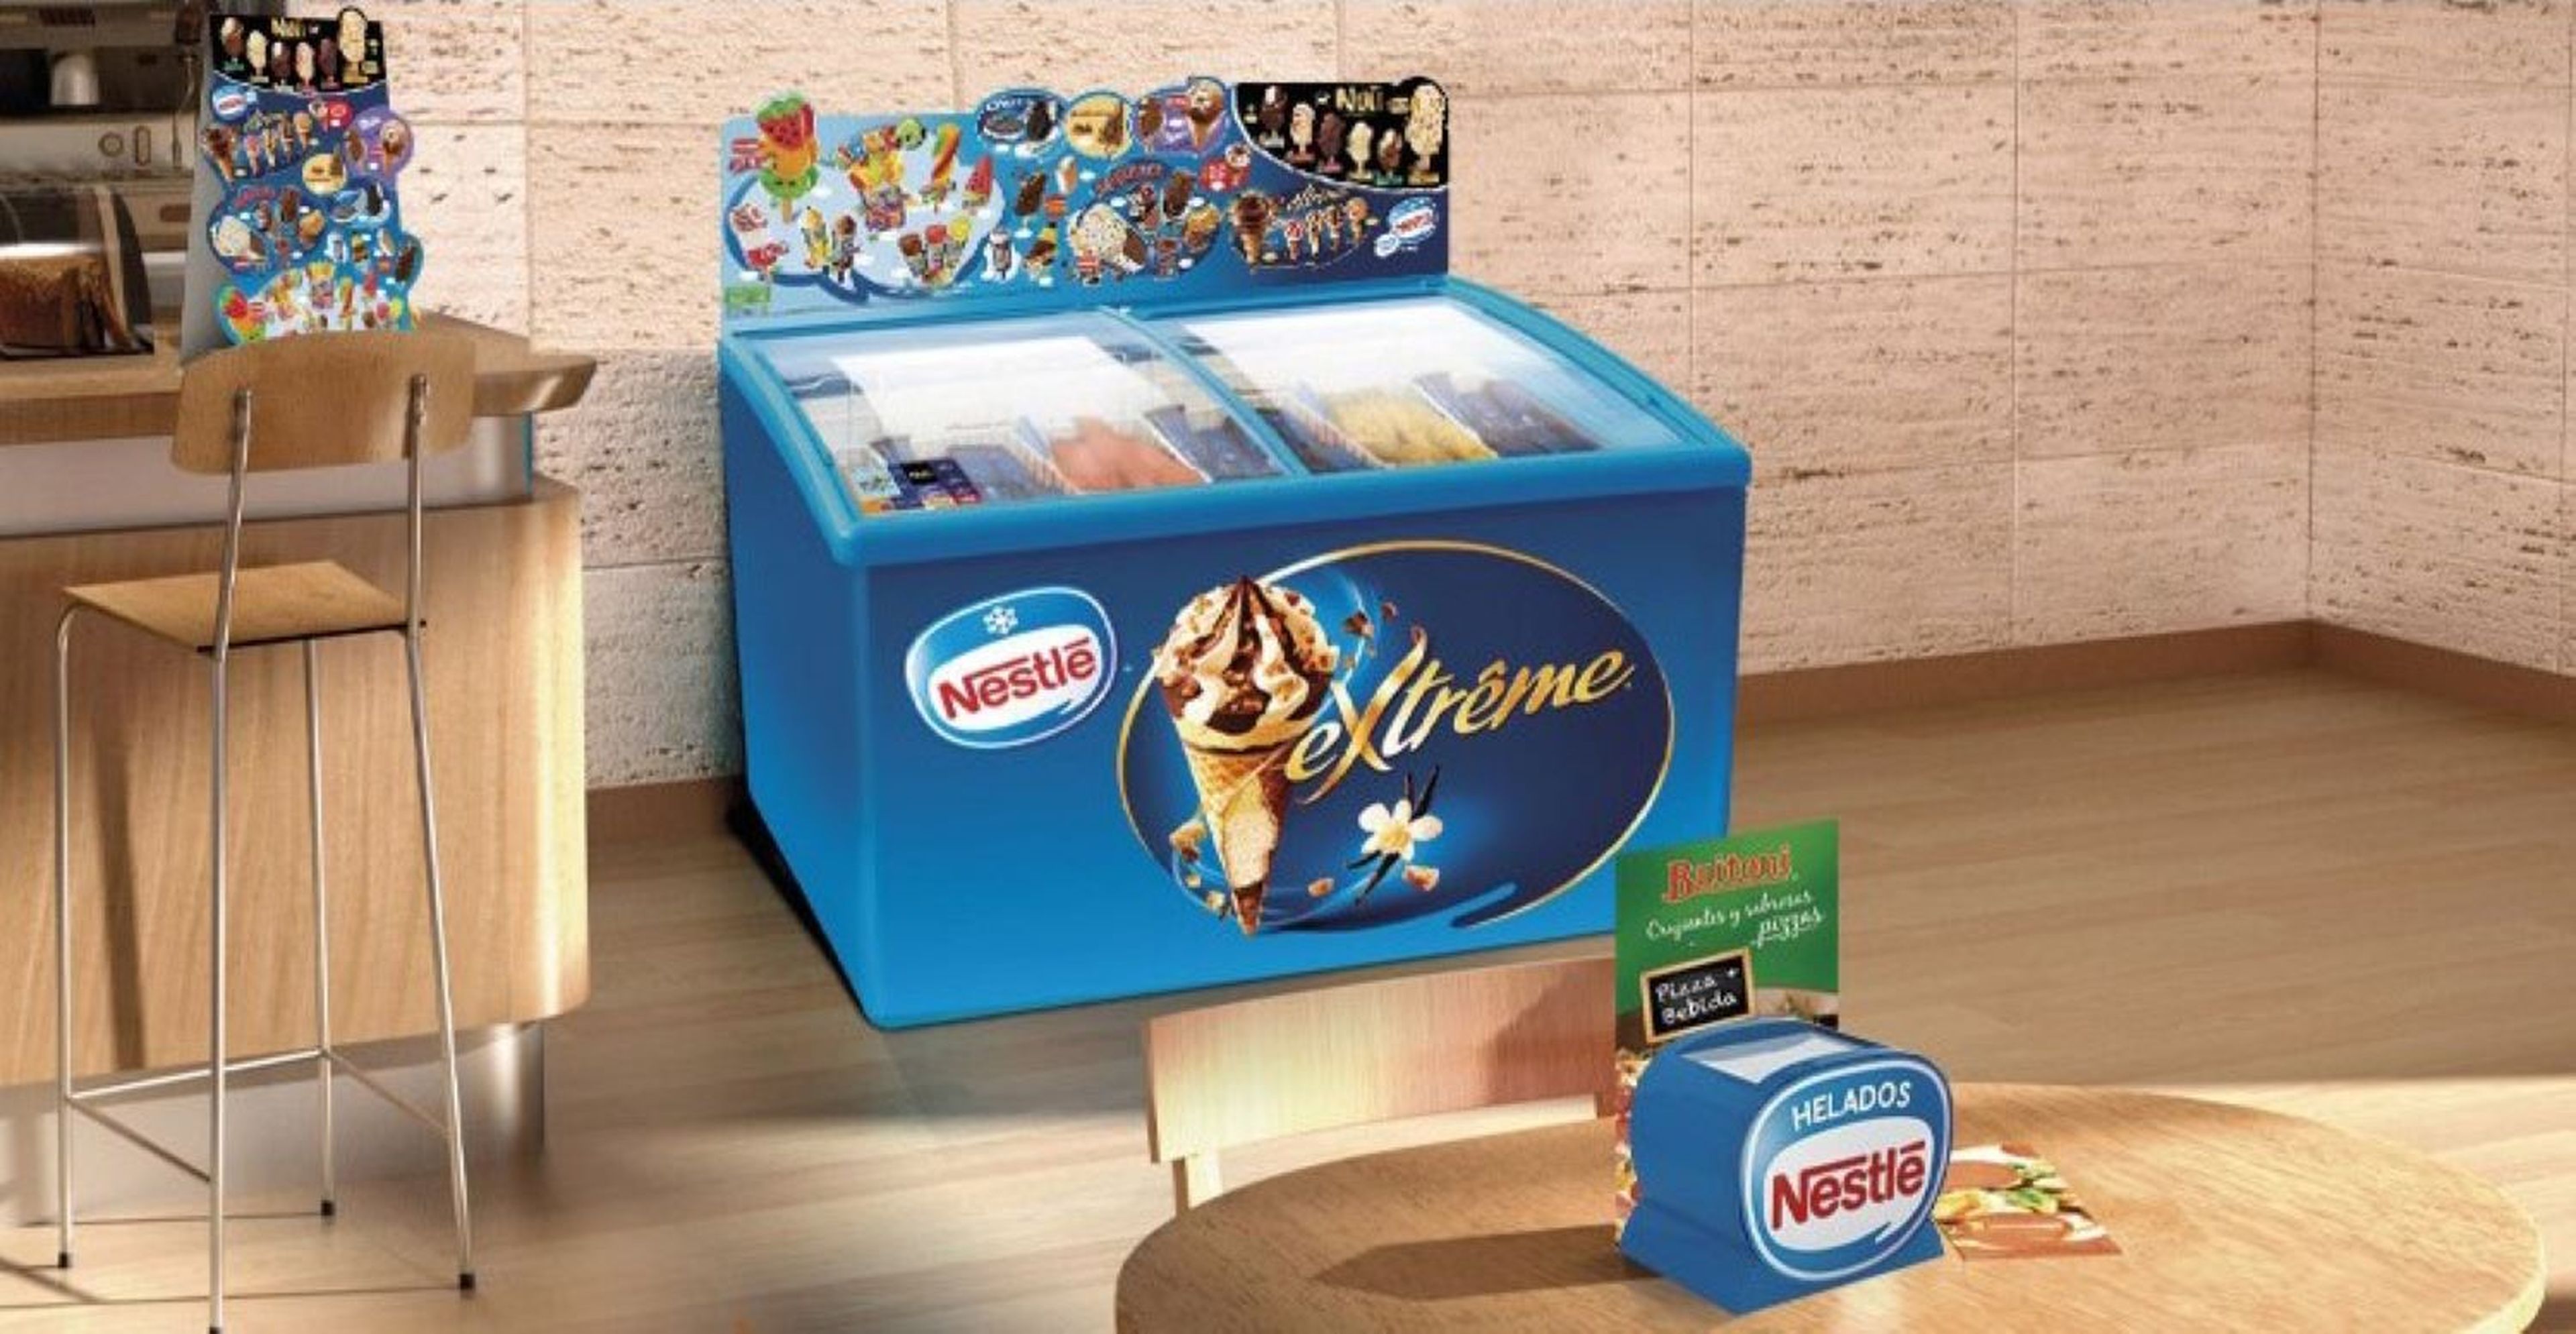 Aquí puedes consultar si tu lote de helados de Nestlé u otras marcas es uno de los afectados por la contaminación con óxido de etileno